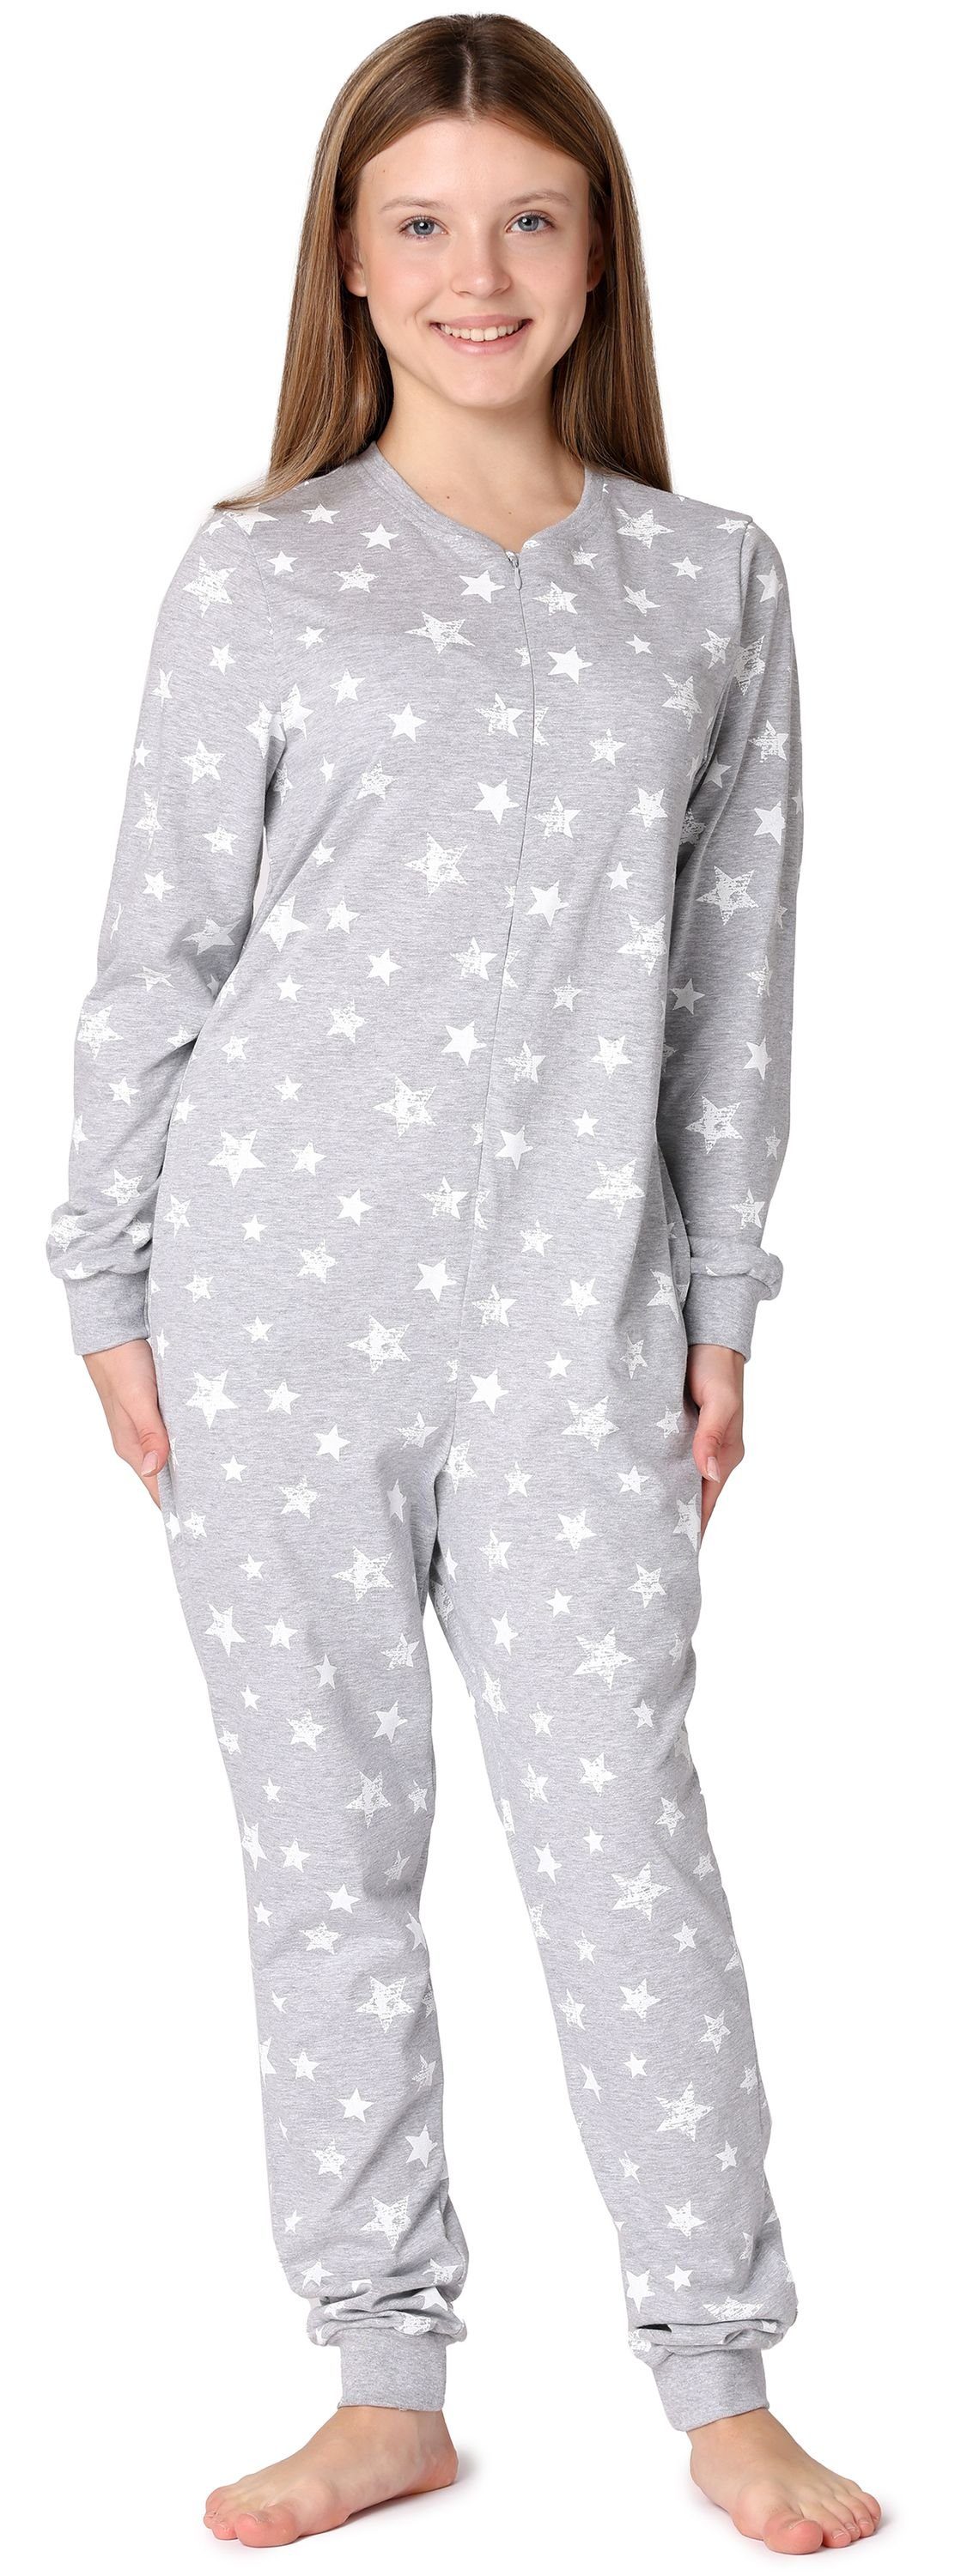 Merry Style Schlafanzug Mädchen Jugend Schlafanzug Schlafoverall MS10-235 Melange/Ecru Sterne